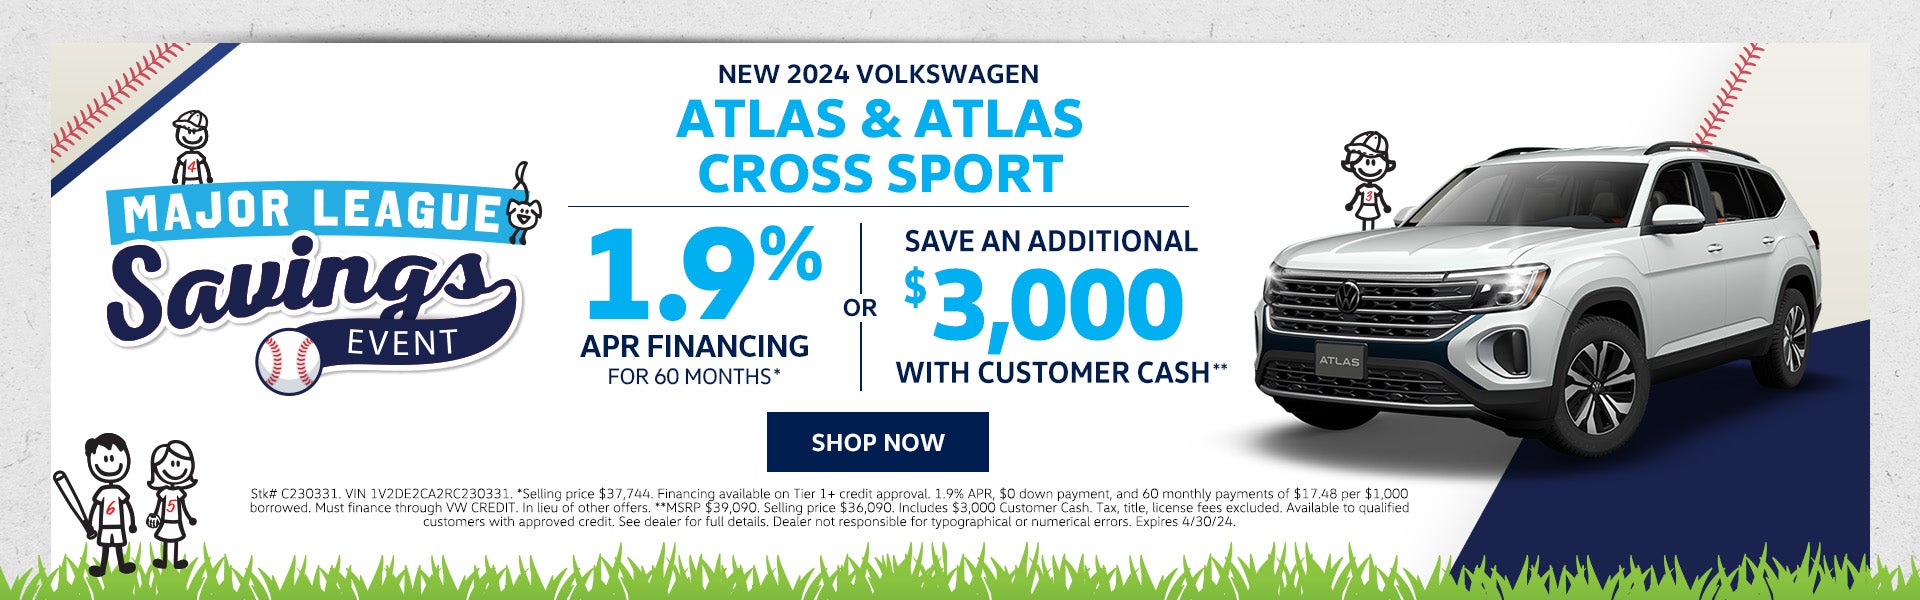 New 2024 VW Atlas & Atlas Cross Sport